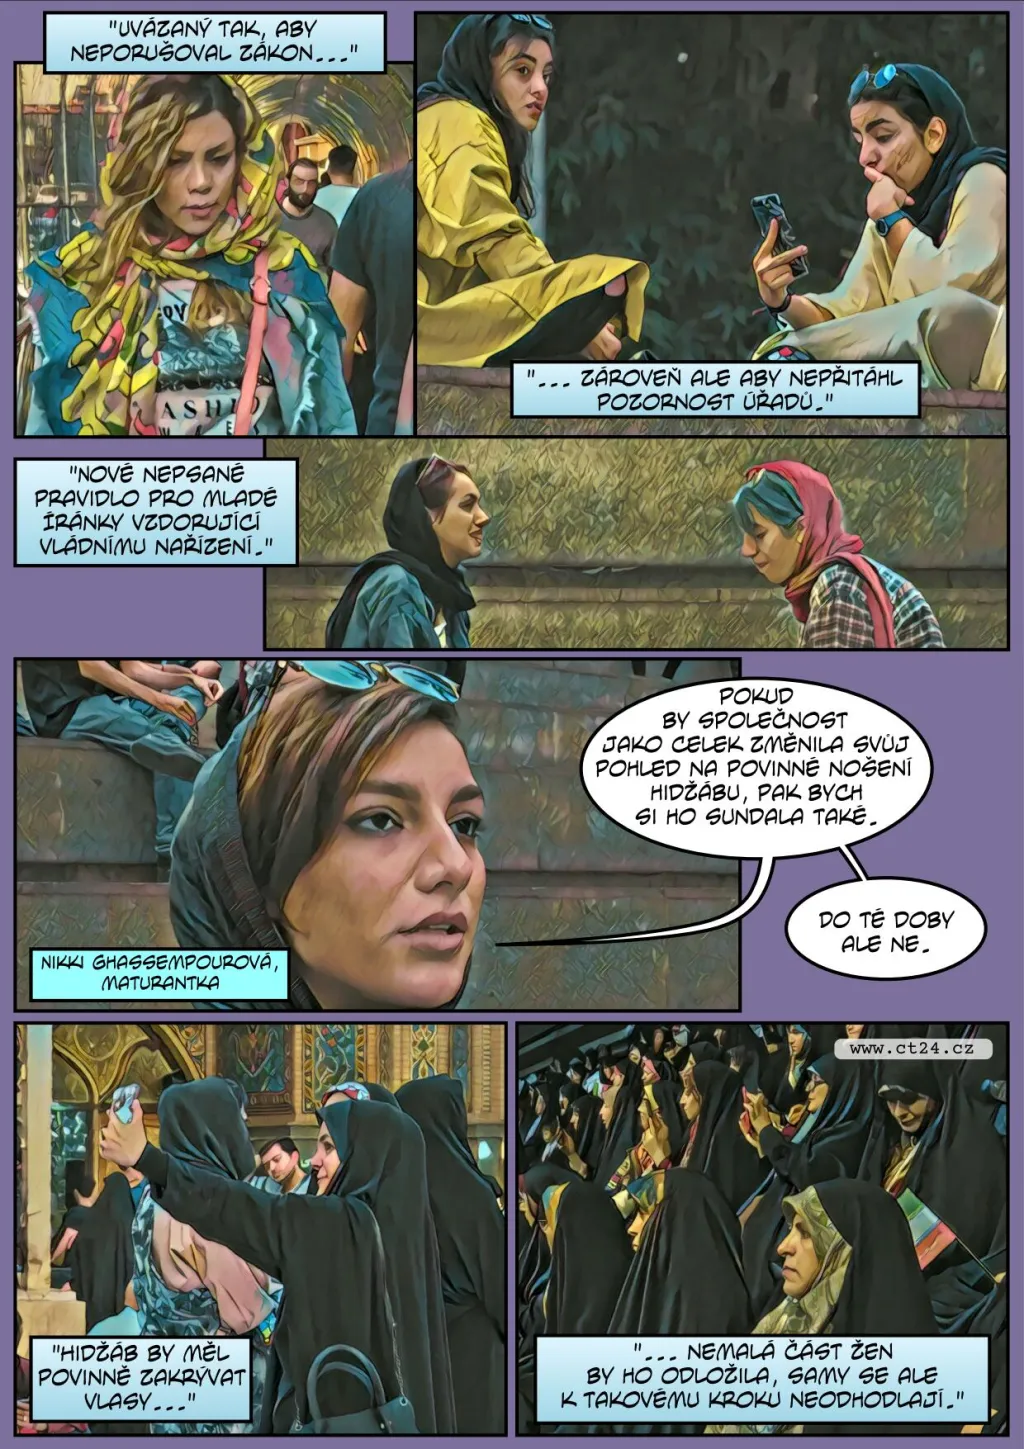 Mládé Íránky vzdorují režimu a odkládají hidžáby